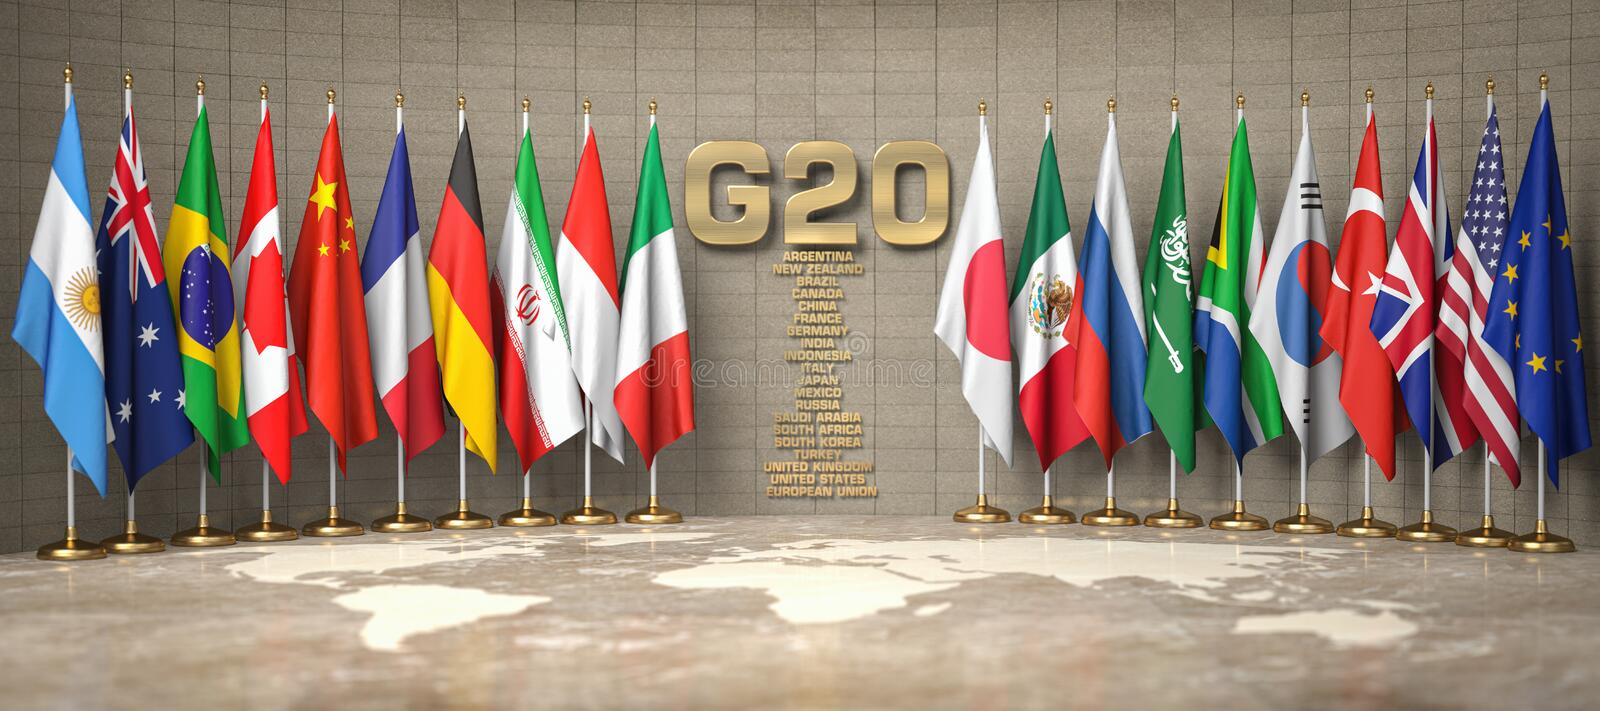 रुसलाई जी-२० बैठकमा बस्ने अधिकार छैन : बेलायत